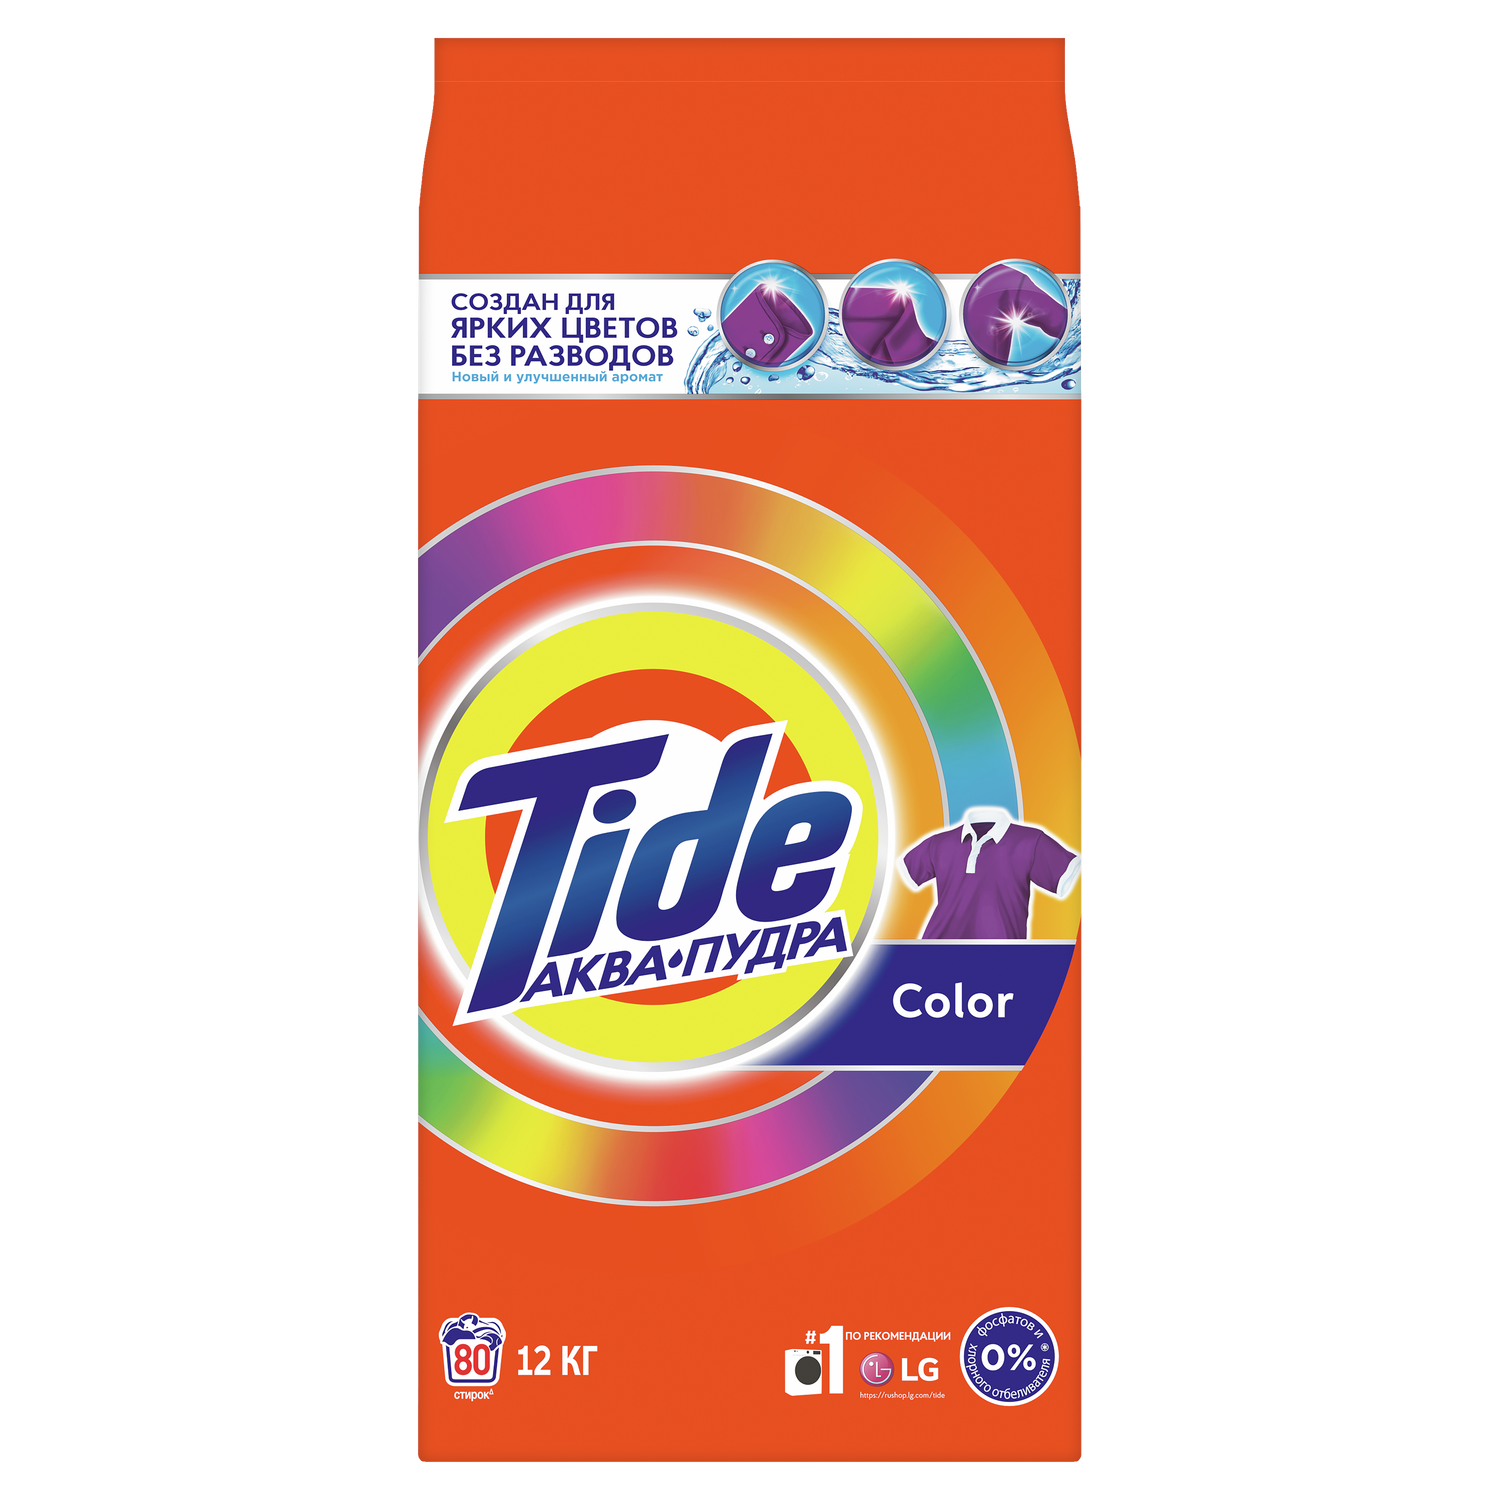 Порошок стиральный Tide Автомат Color 12кг - фото 1